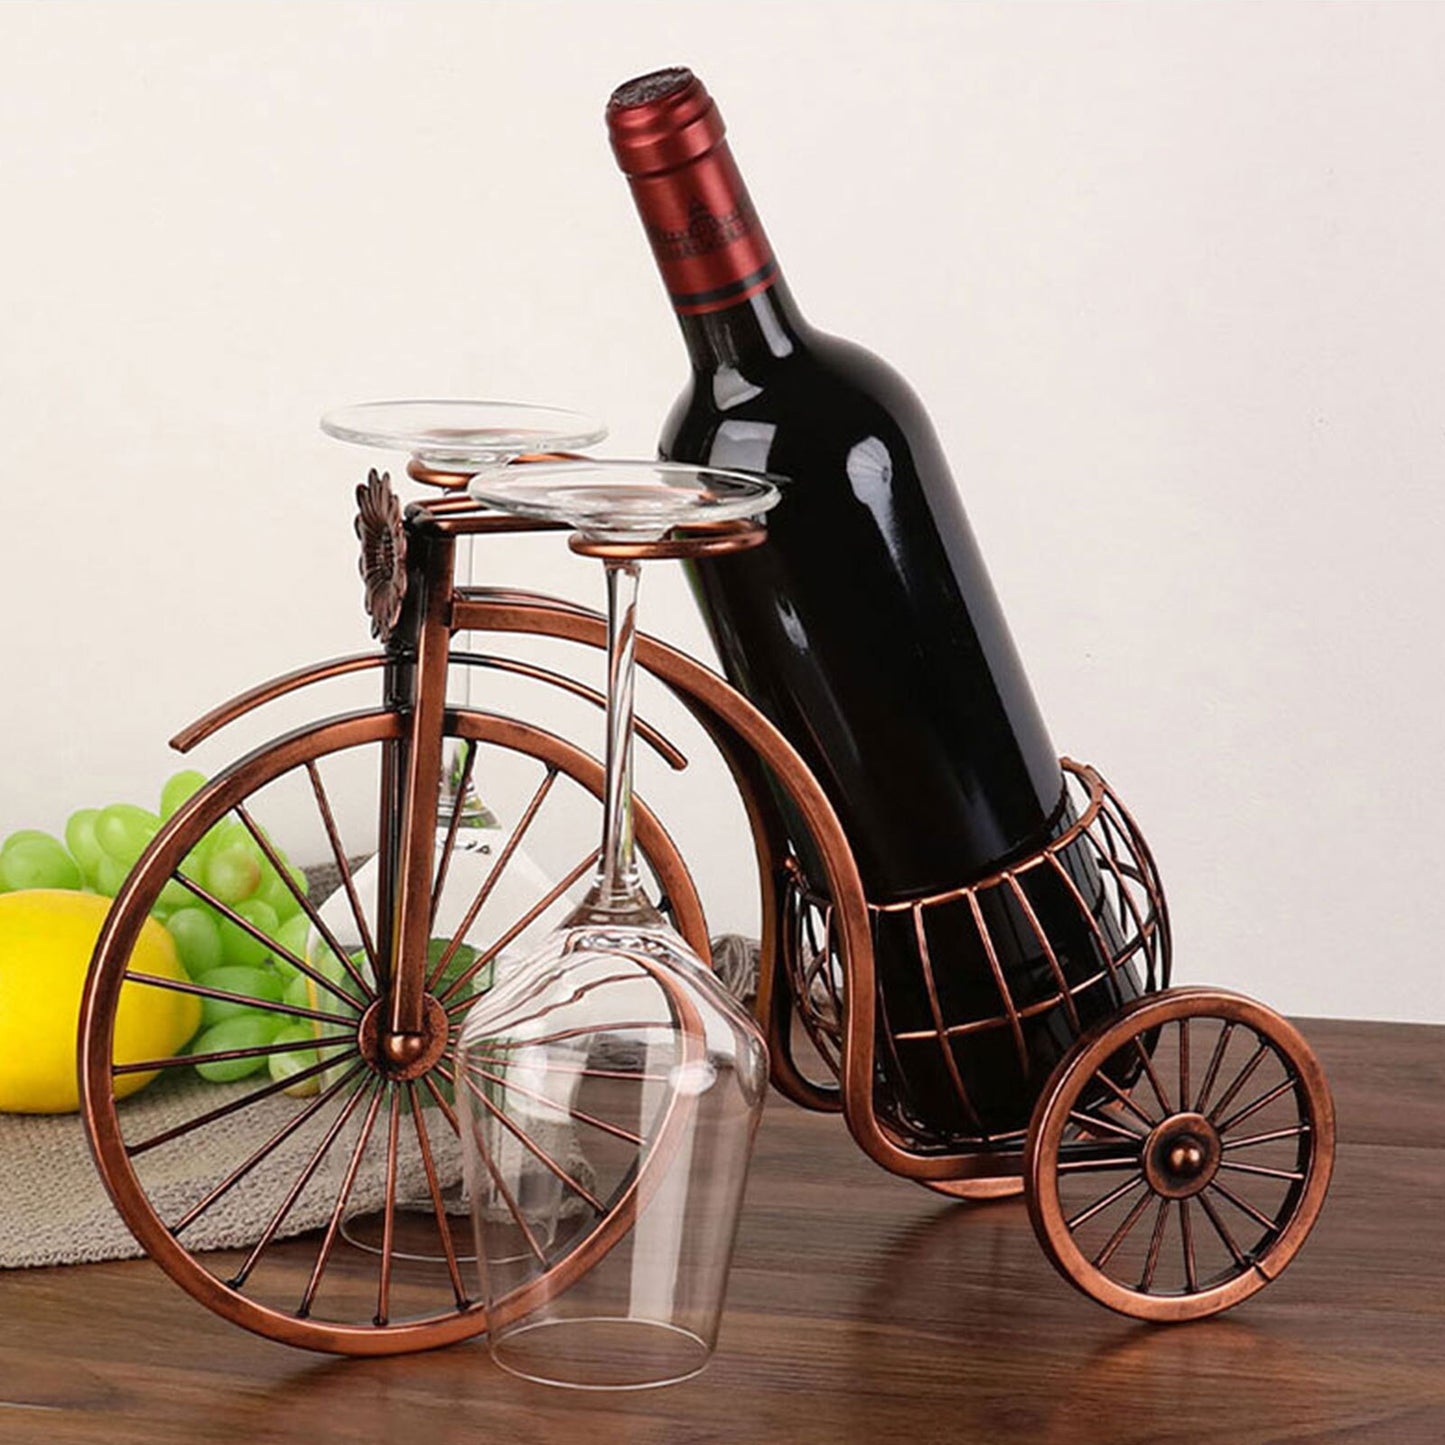 Vintage Wine Bottle and Glass Holder Decoration